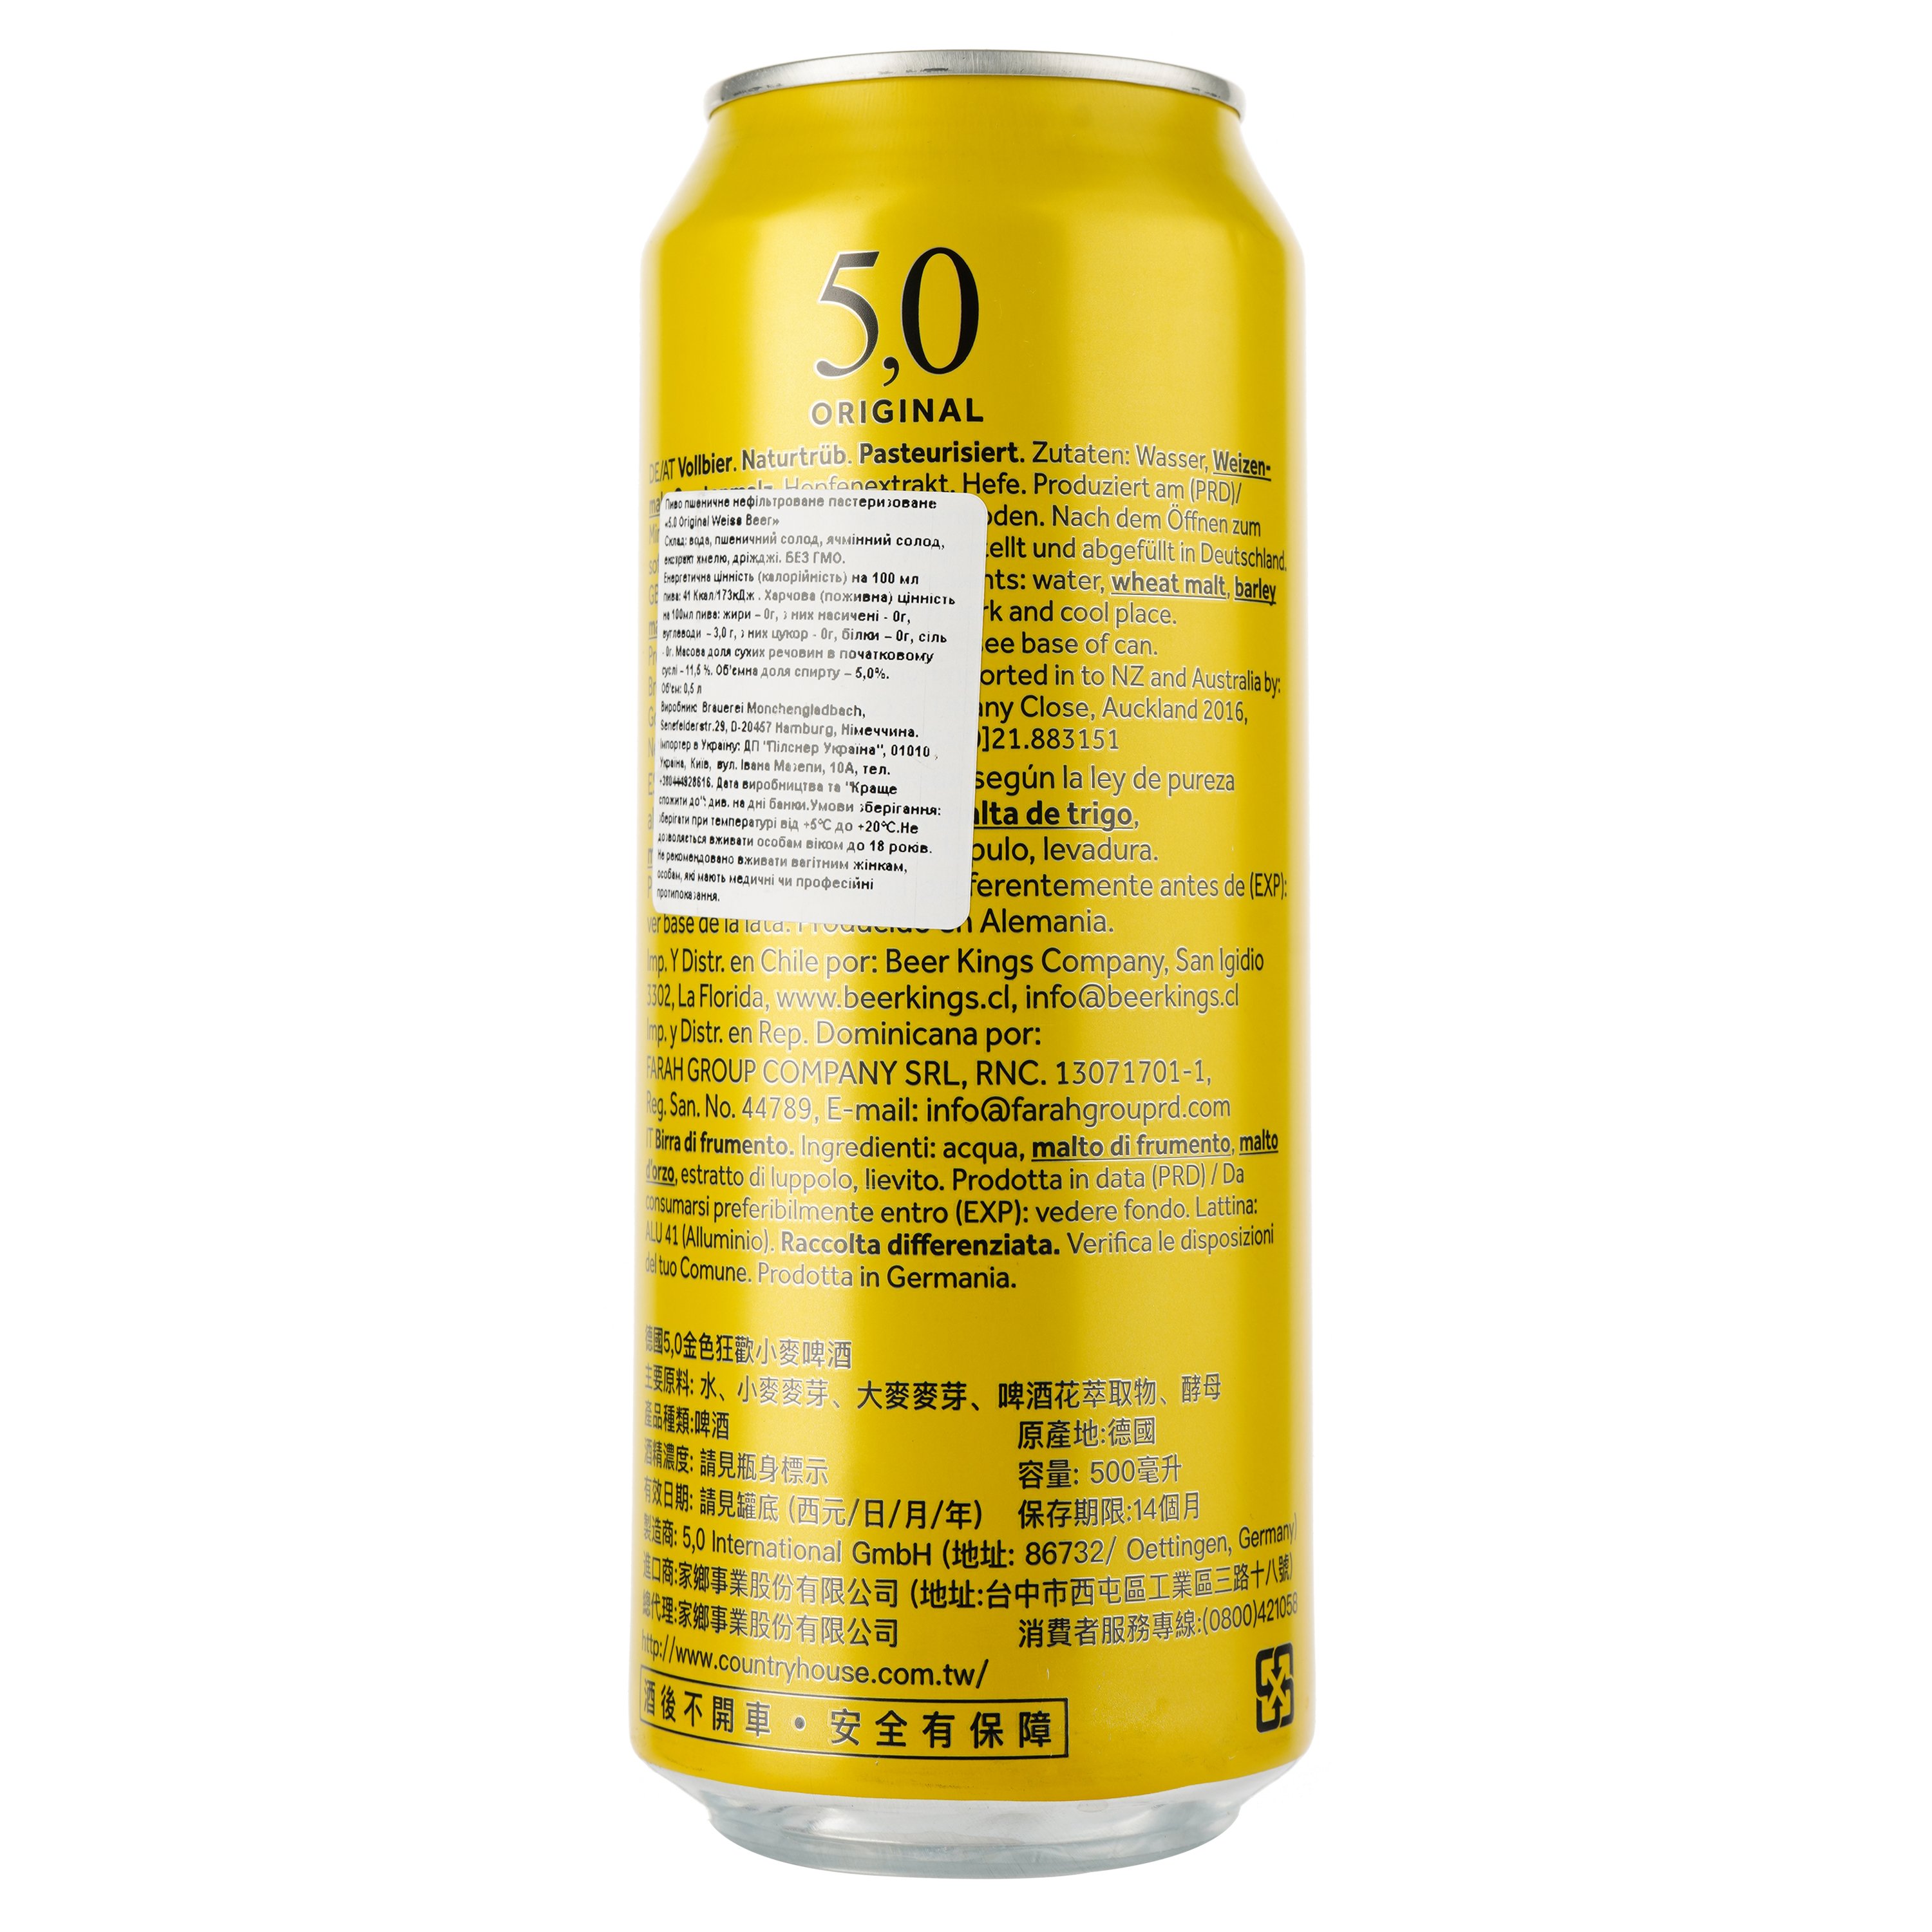 Пиво 5,0 Original Weiss Beer, светлое, нефильтрованное, 5%, ж/б, 0,5 л - фото 2